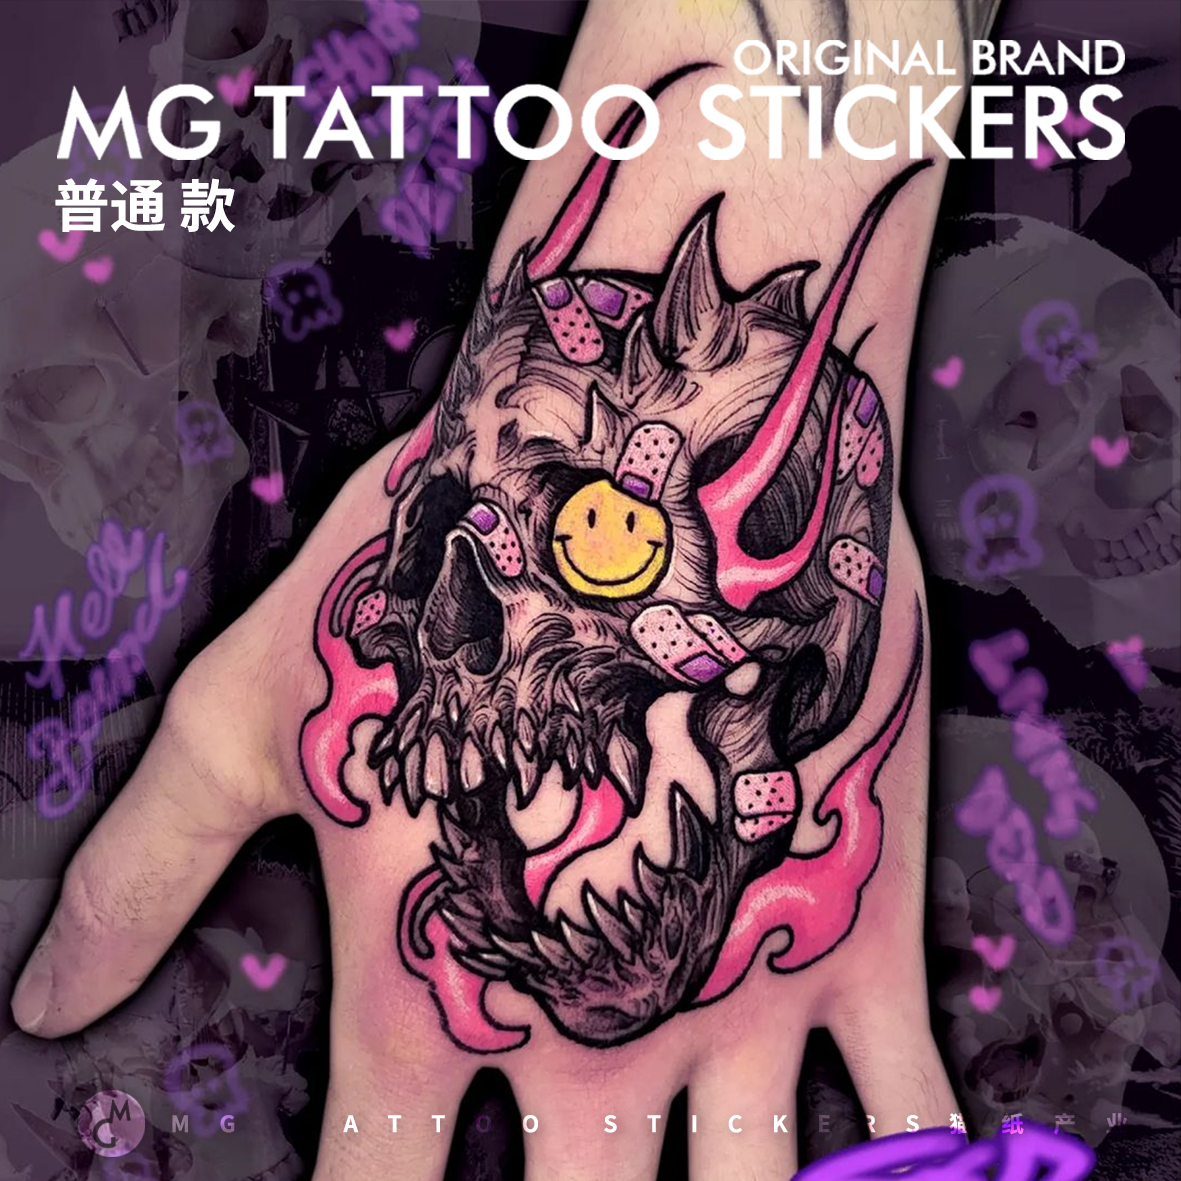 MG tattoo 暗黑系个性手背纹身骷髅动漫图案防水男女潮流纹身贴酷